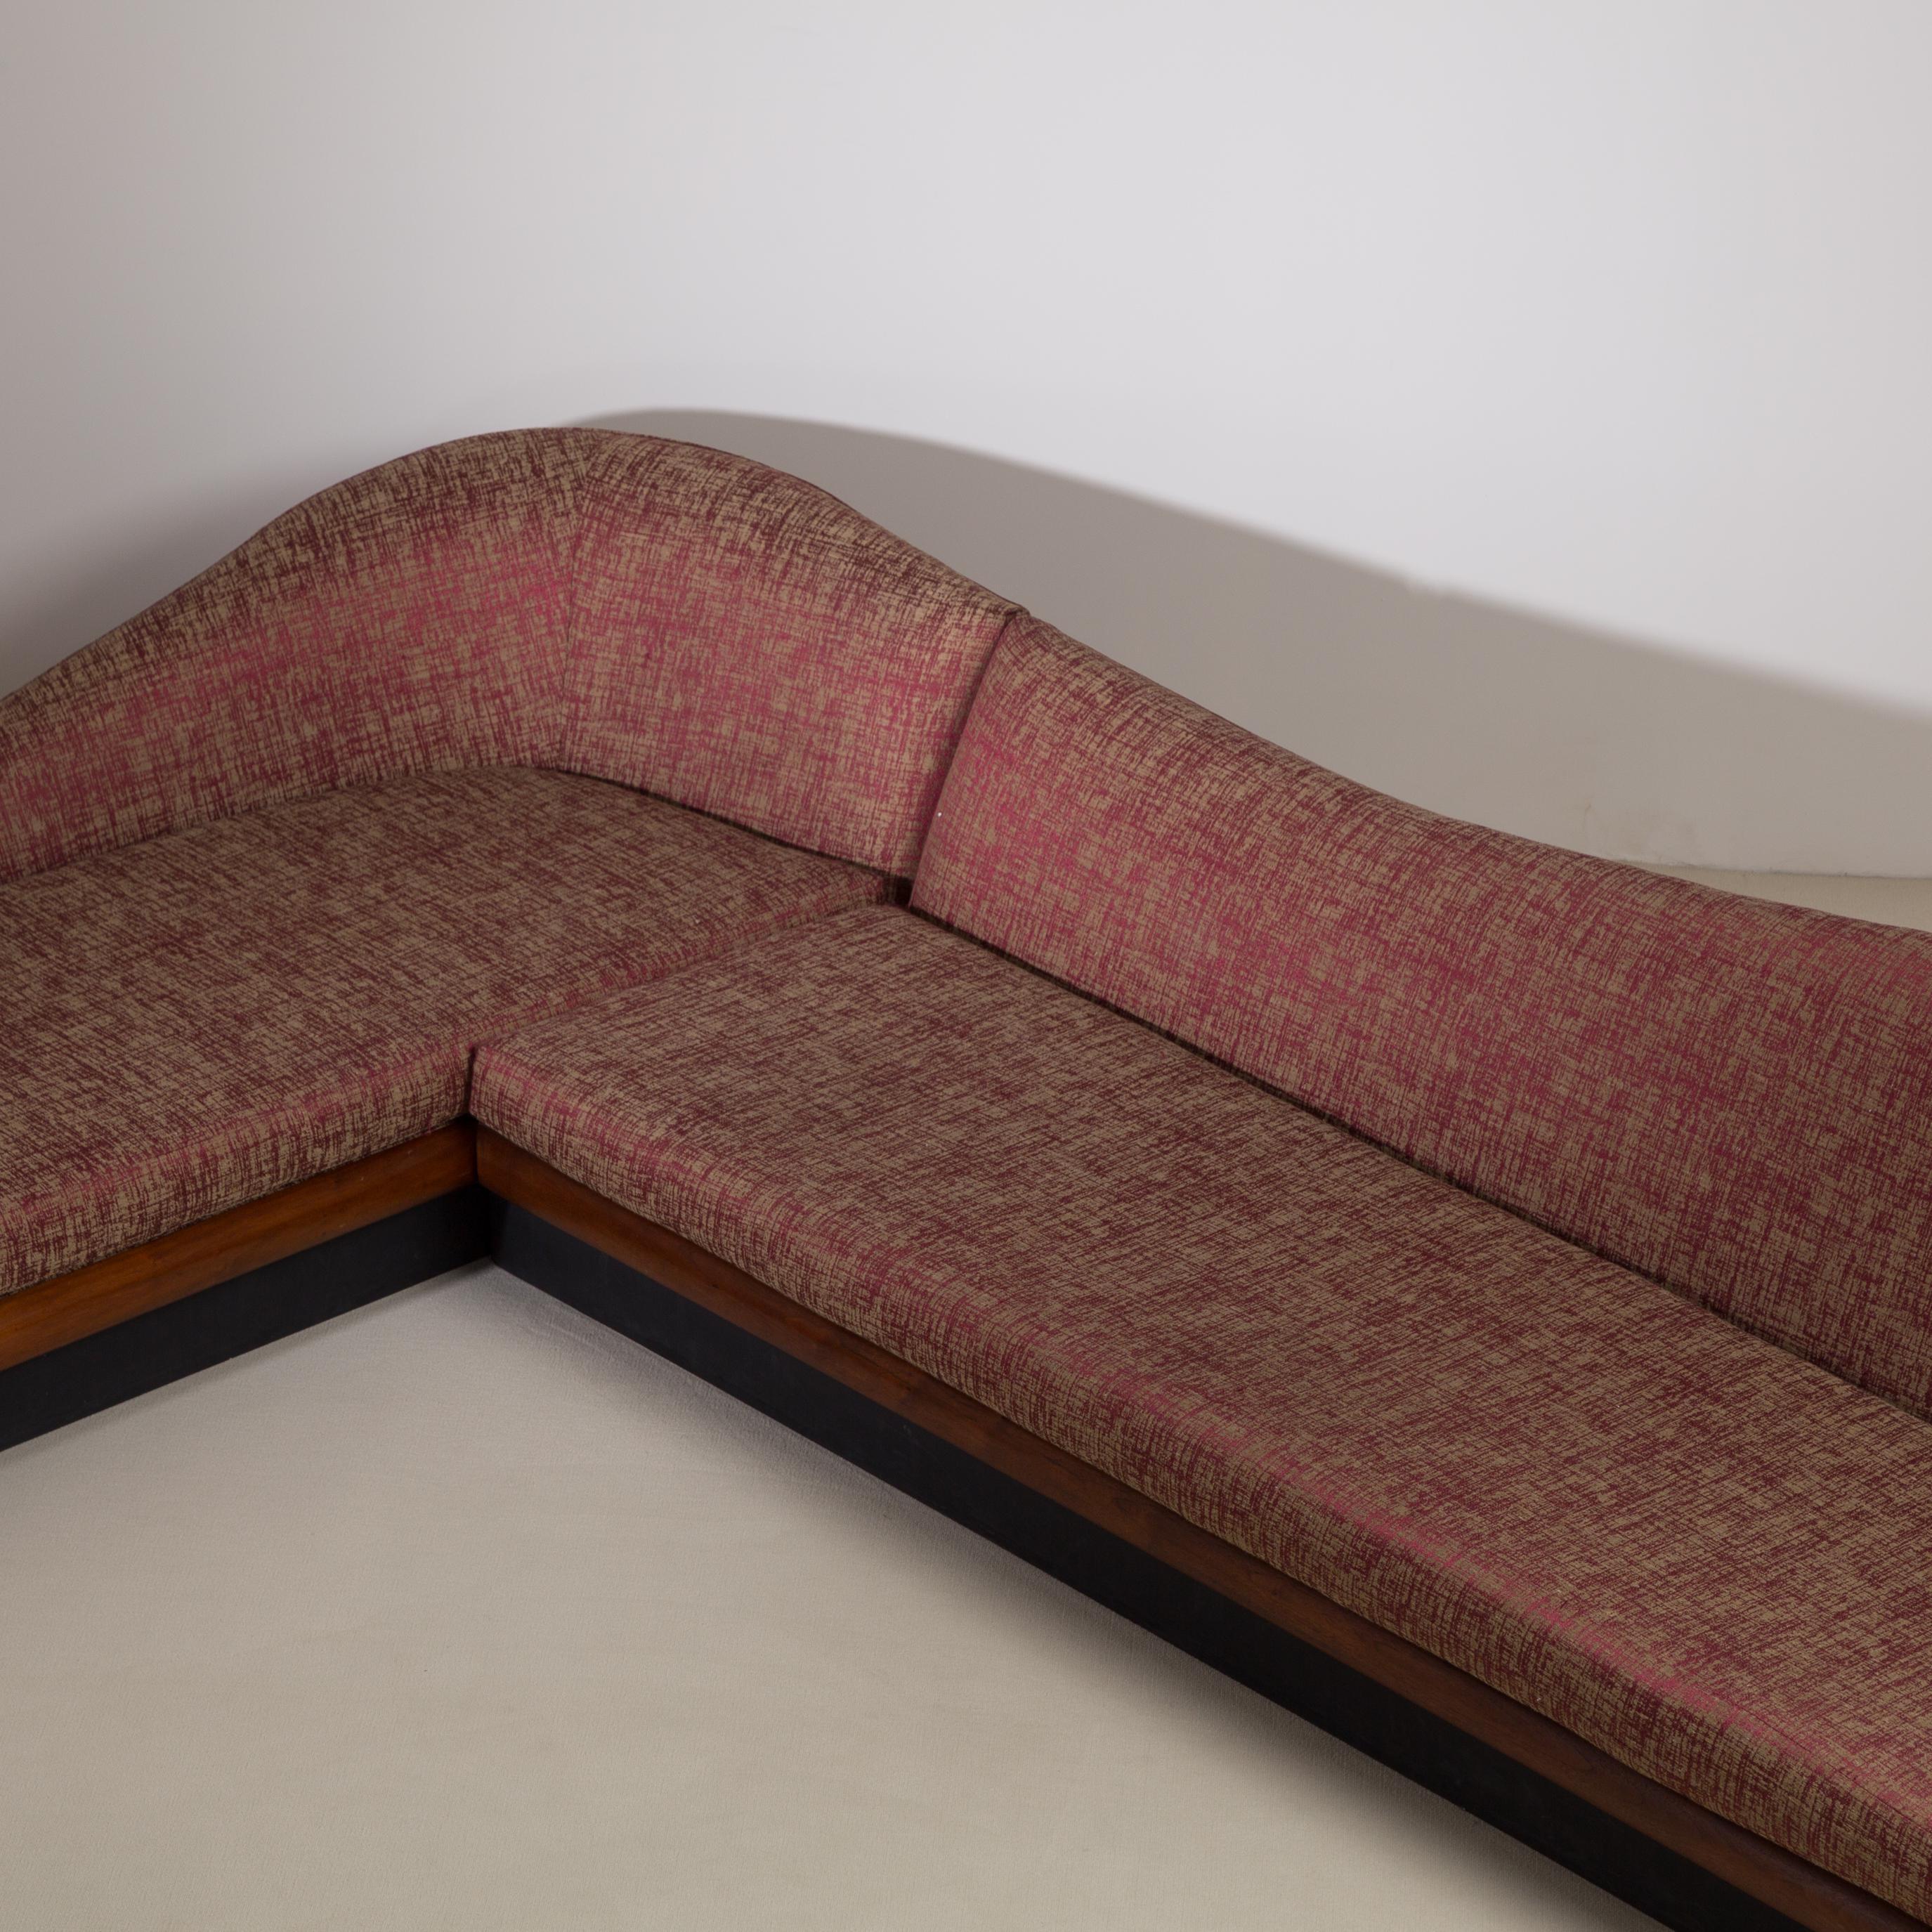 Gebogenes zweiteiliges Wolken-Sofa von Adrian Pearsall für Craft Associates, USA, 1950er Jahre (Stoff)